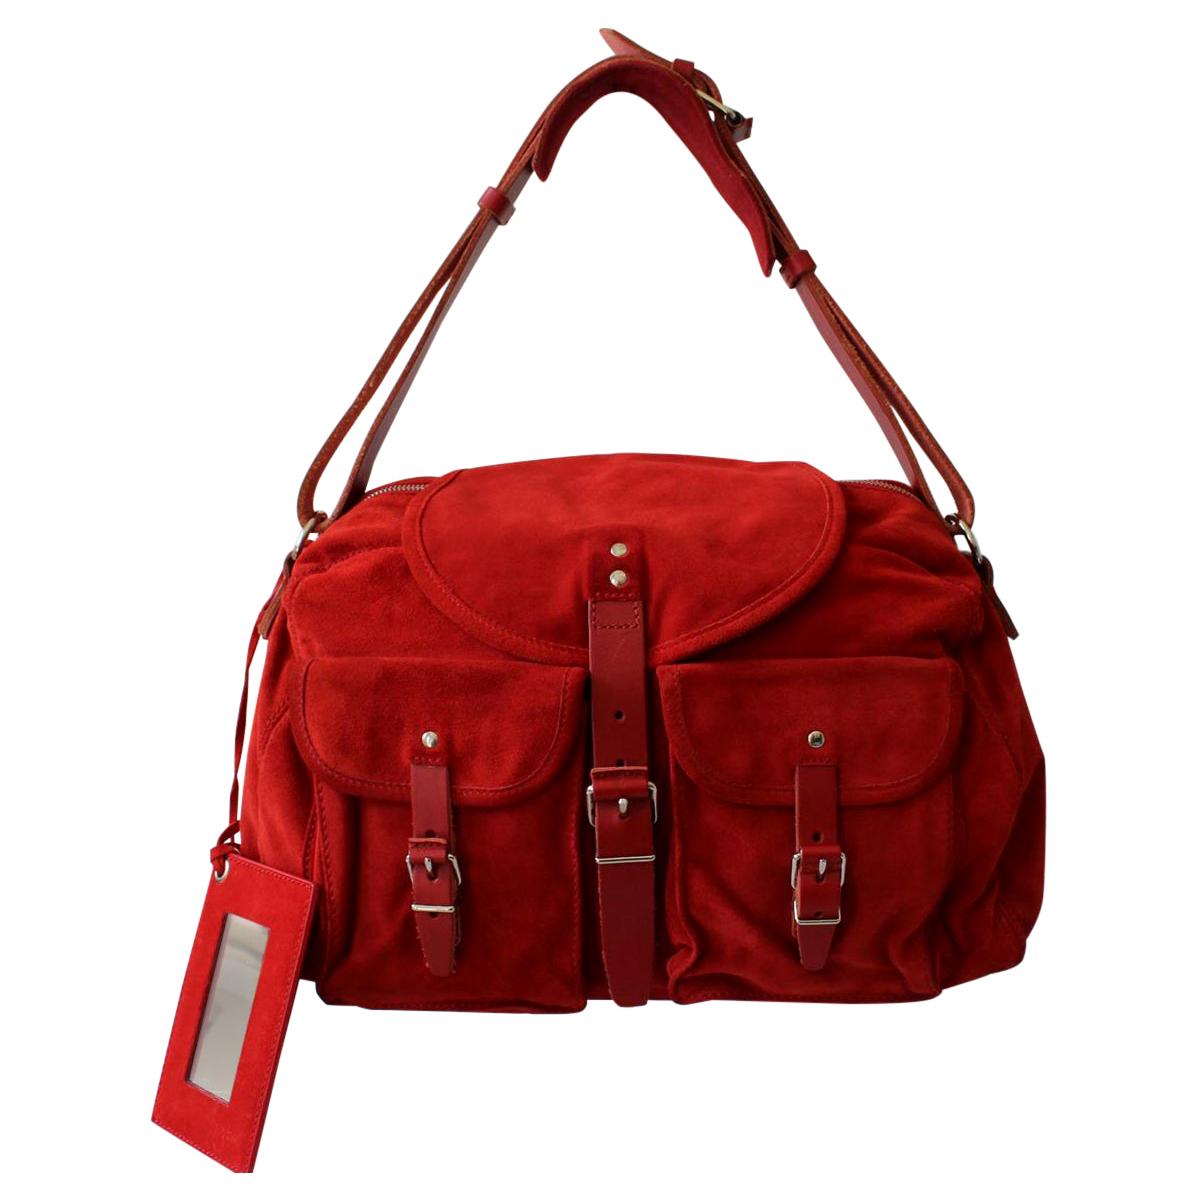 Balenciaga Red Suede Bag